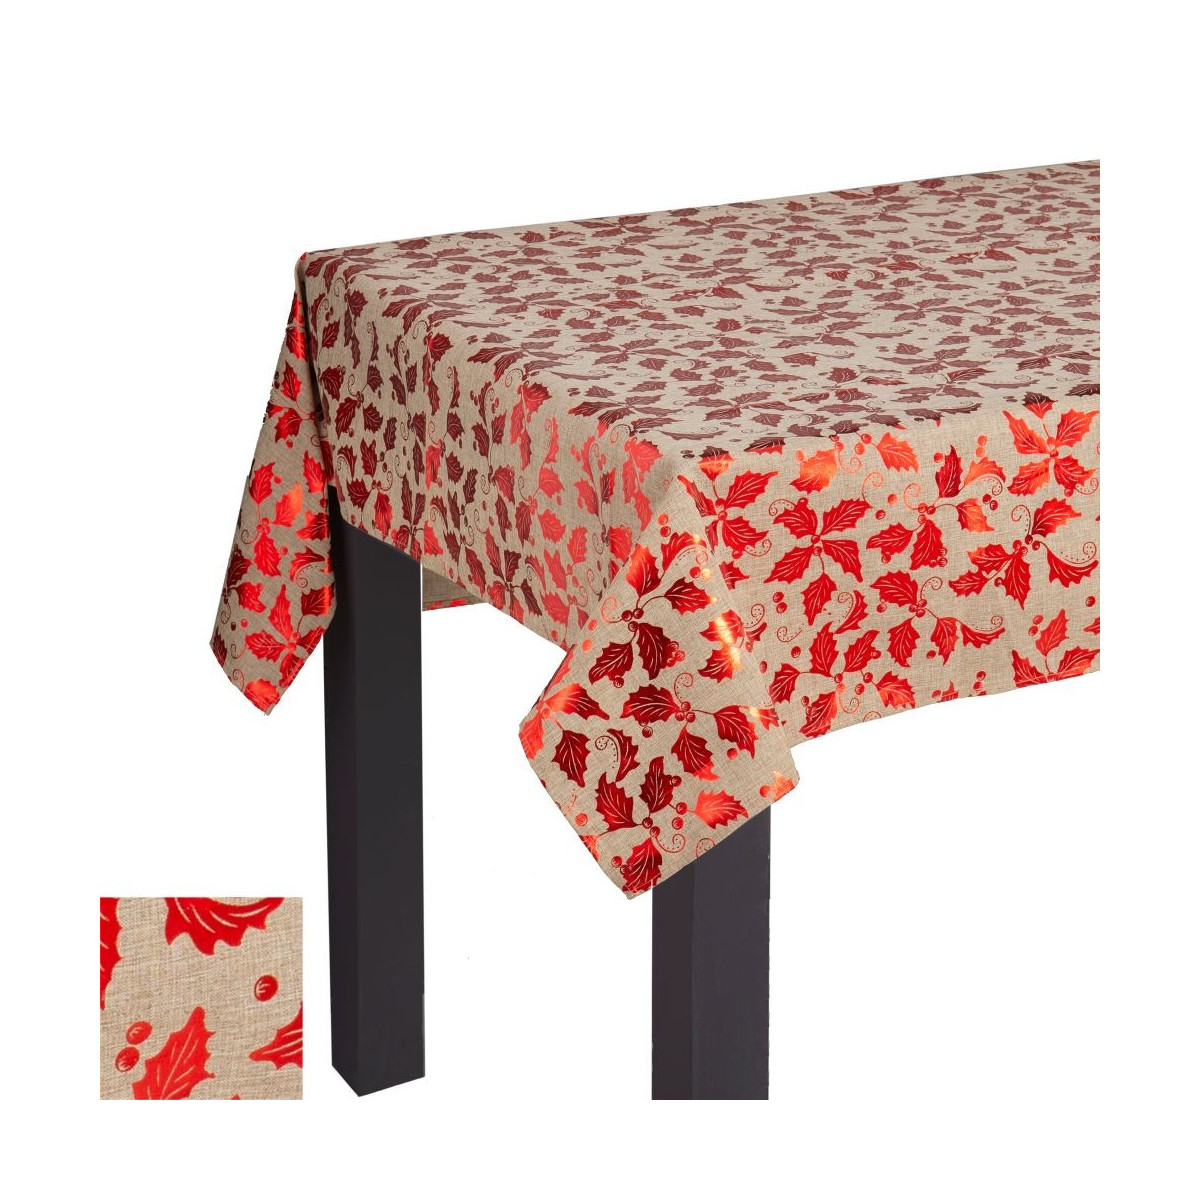 Toalha de mesa impressa em poliéster vermelho 140 x 180 cm